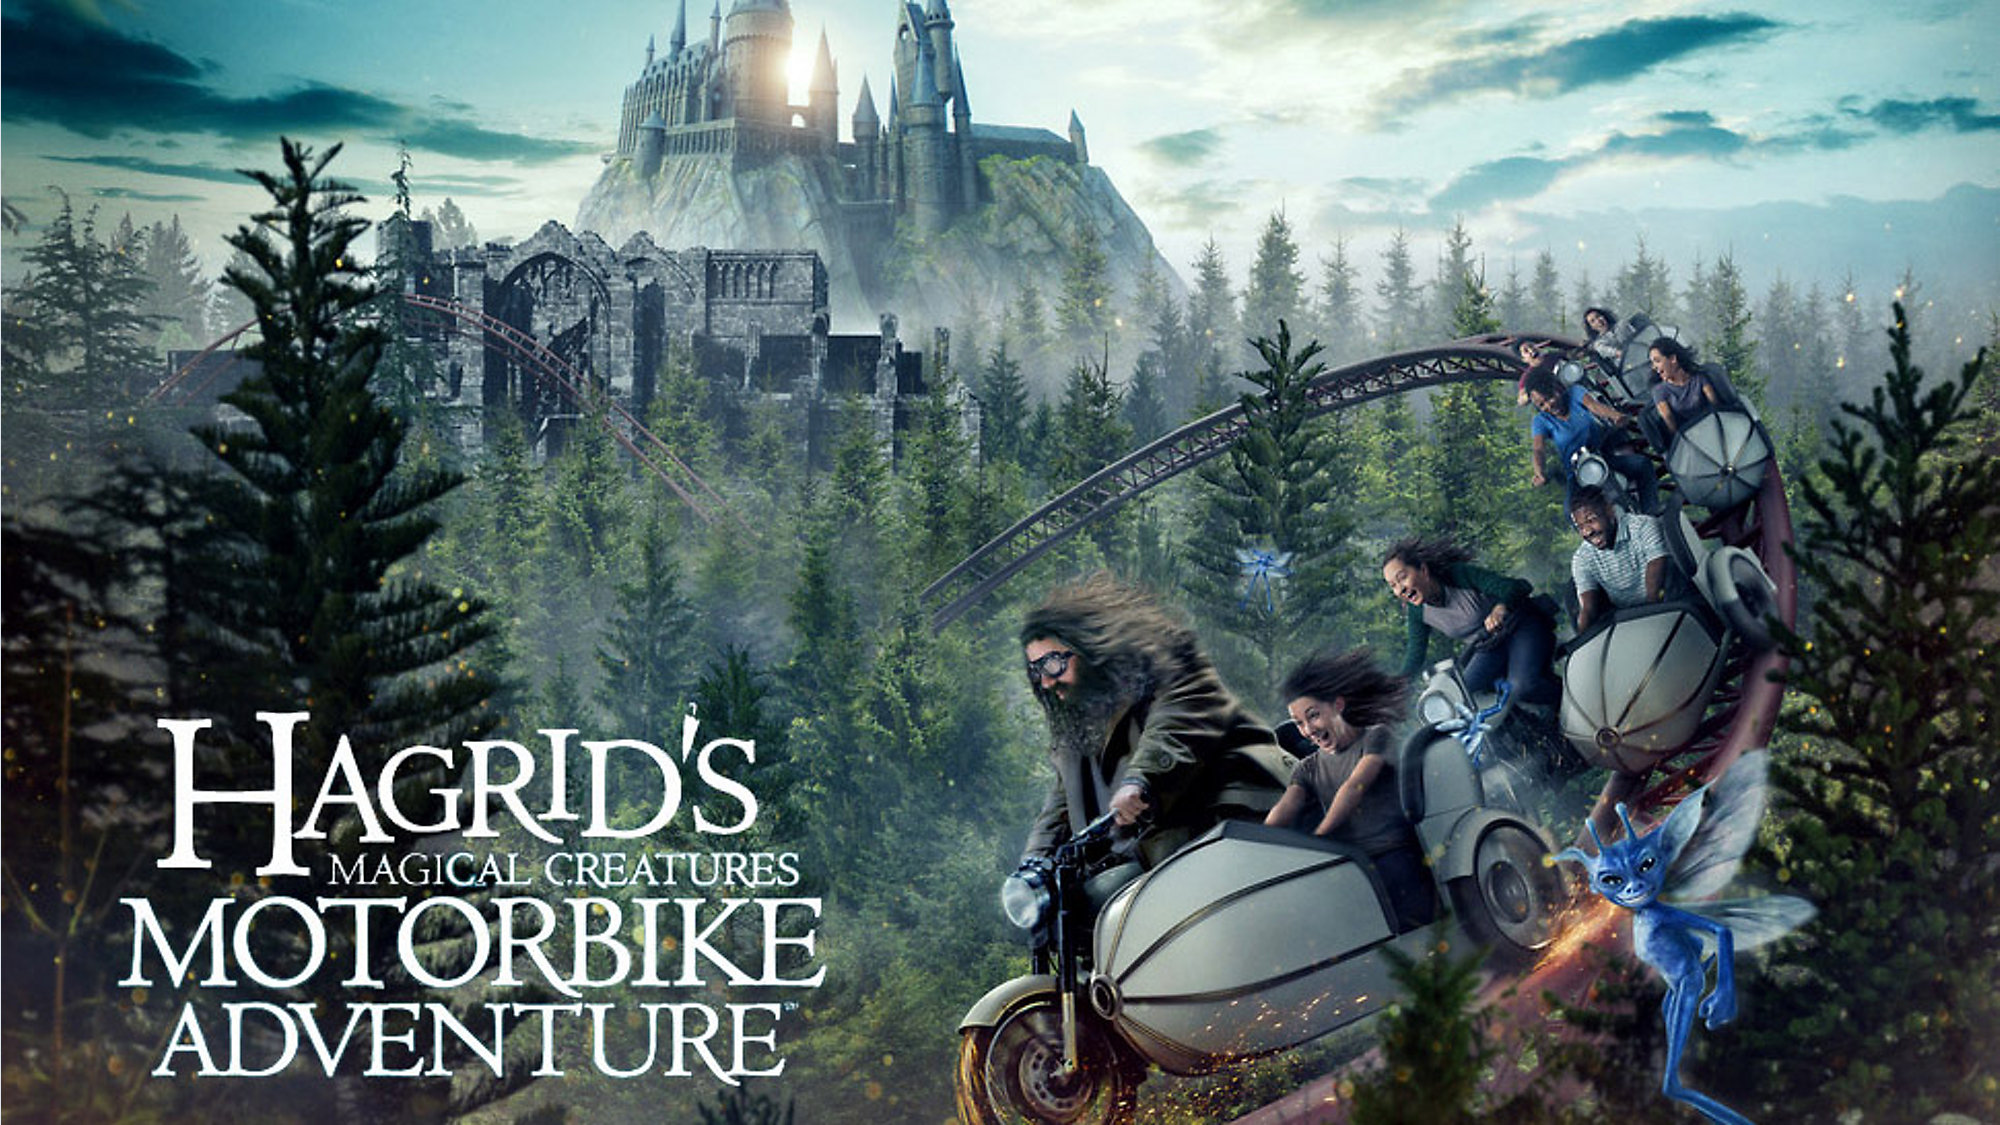 Harry Potter : l'attraction d'Hagrid a ouvert à Universal et ça a l'air génial (vidéo)